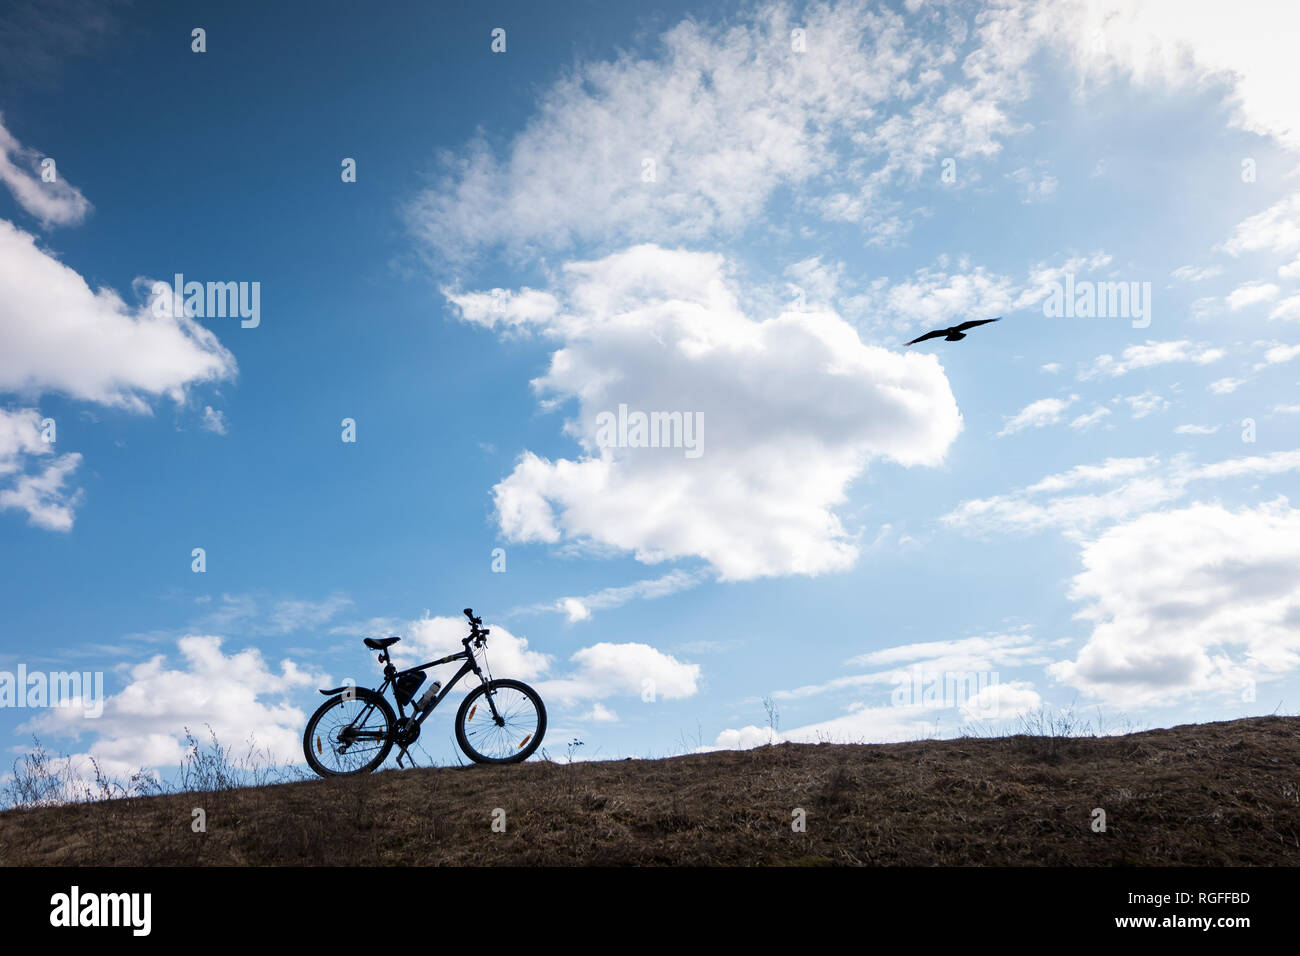 Bike silhouette dans Ciel bleu avec des nuages. symbole d'indépendance et de la liberté avec oiseau en vol Banque D'Images